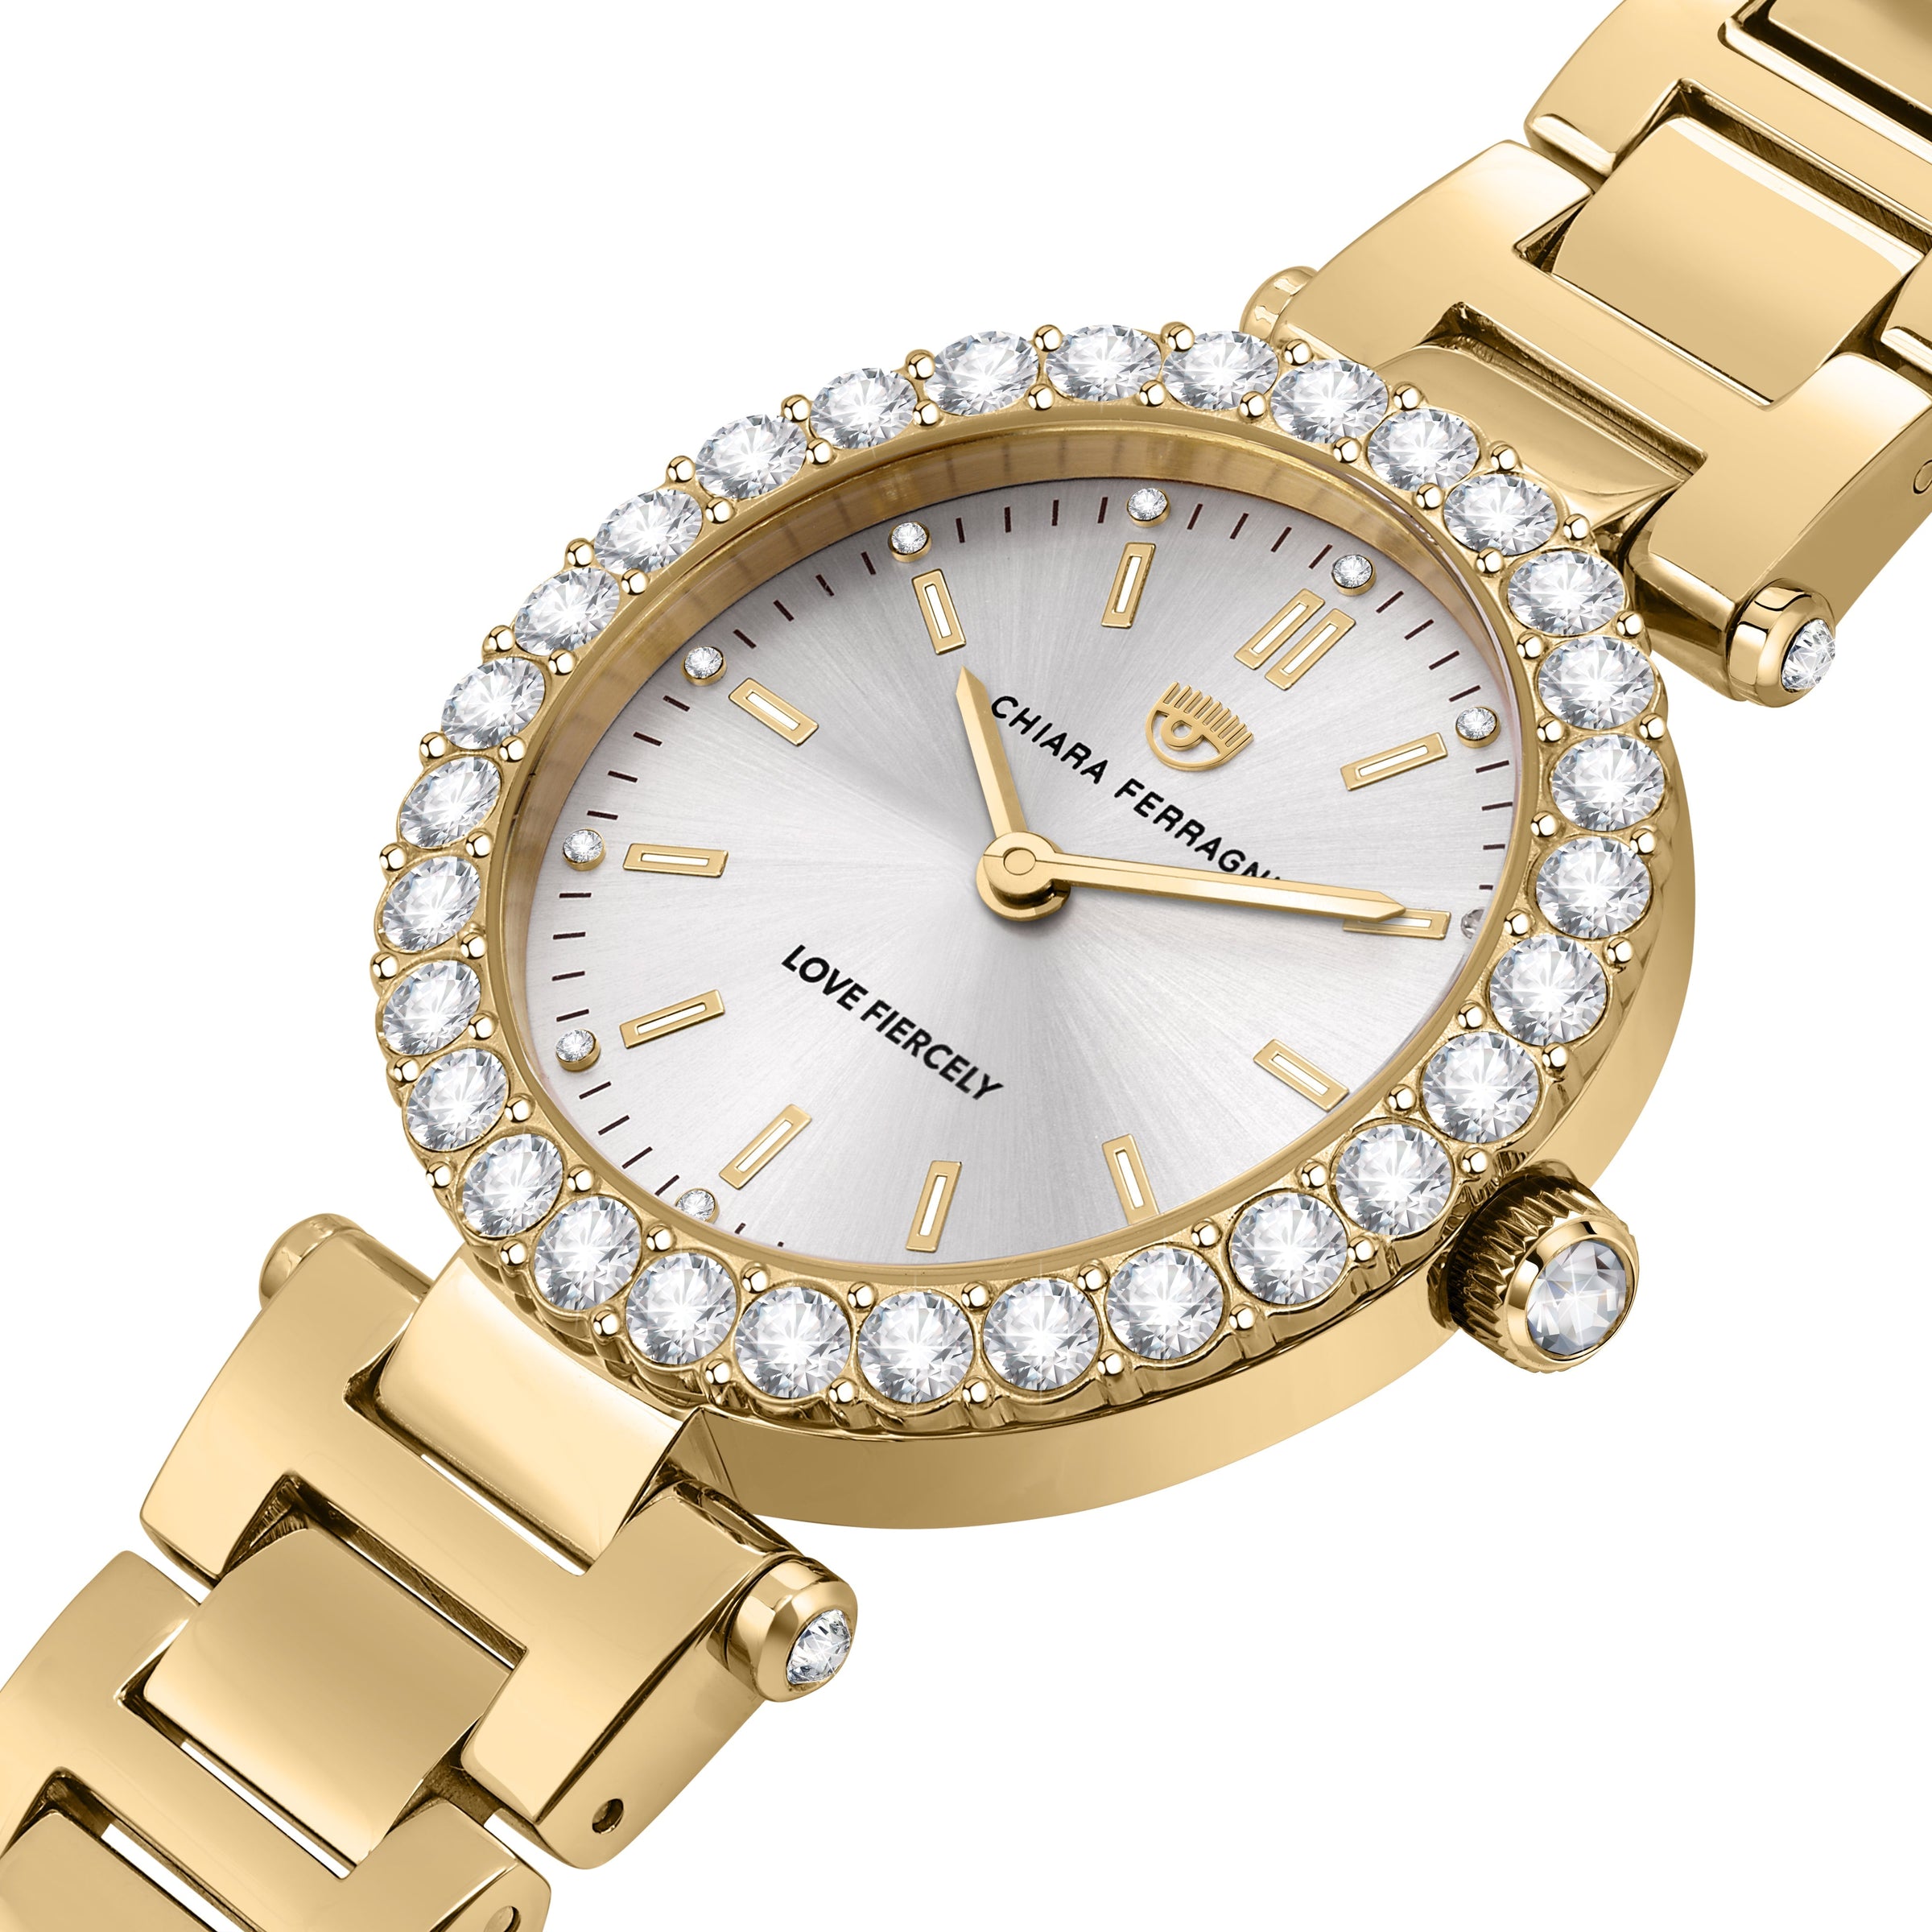 Chiara Ferragni LadyLike Gold 36mm Watch Bevilles Jewellers 